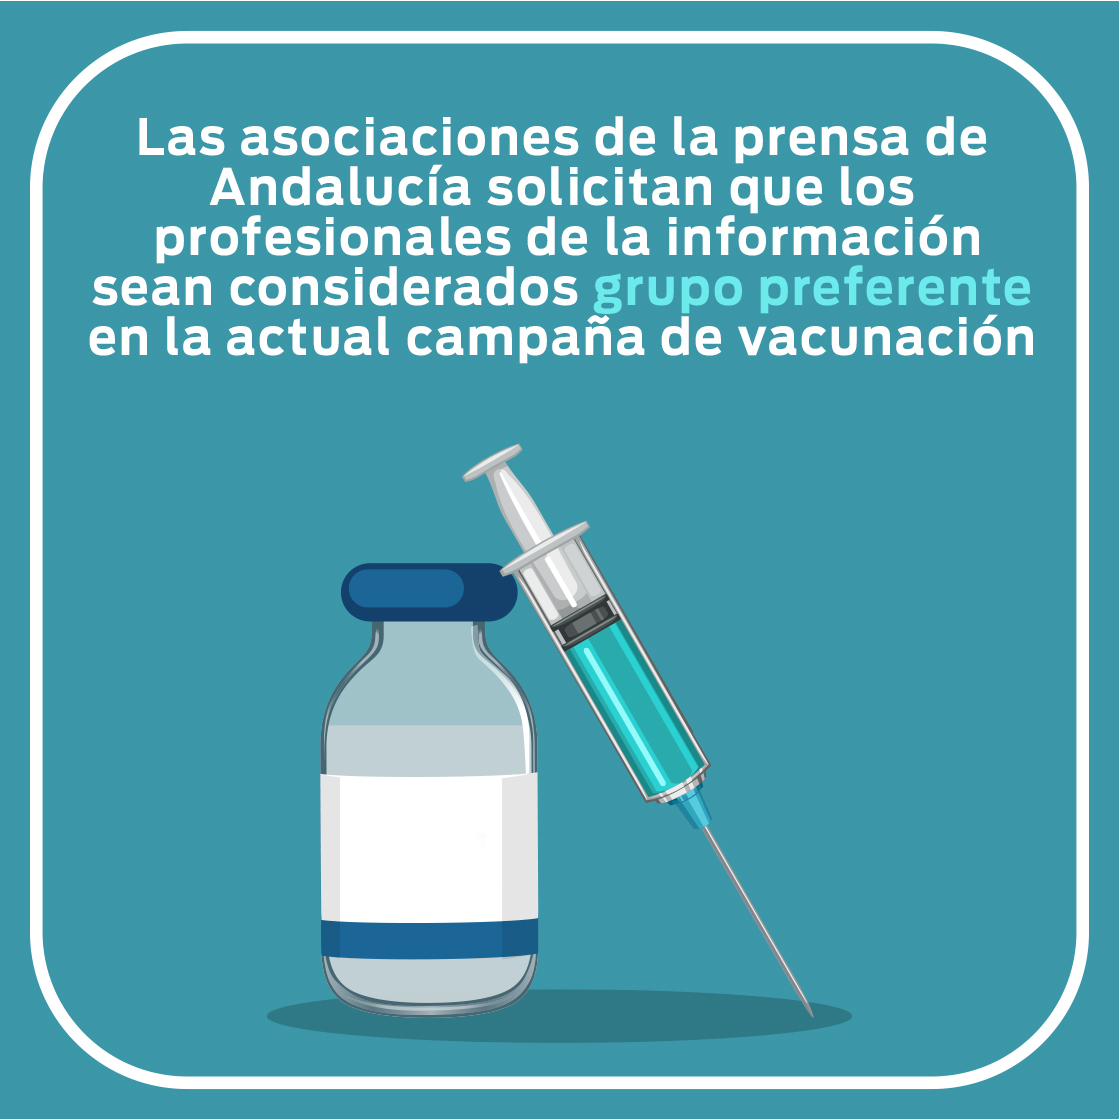 Las asociaciones de la prensa de Andalucía solicitan que los profesionales de la información sean considerados grupo preferente en la actual campaña de vacunación